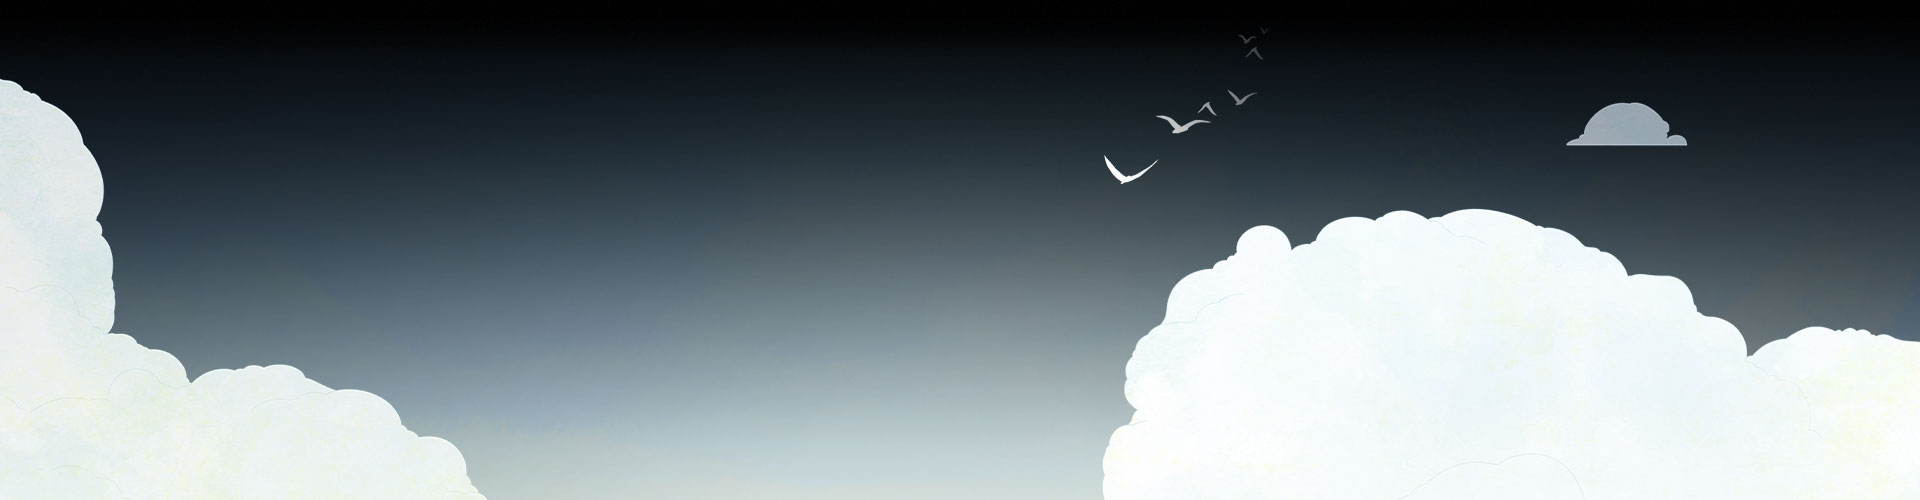 Arrière-plan avec nuages et des oiseaux en vol